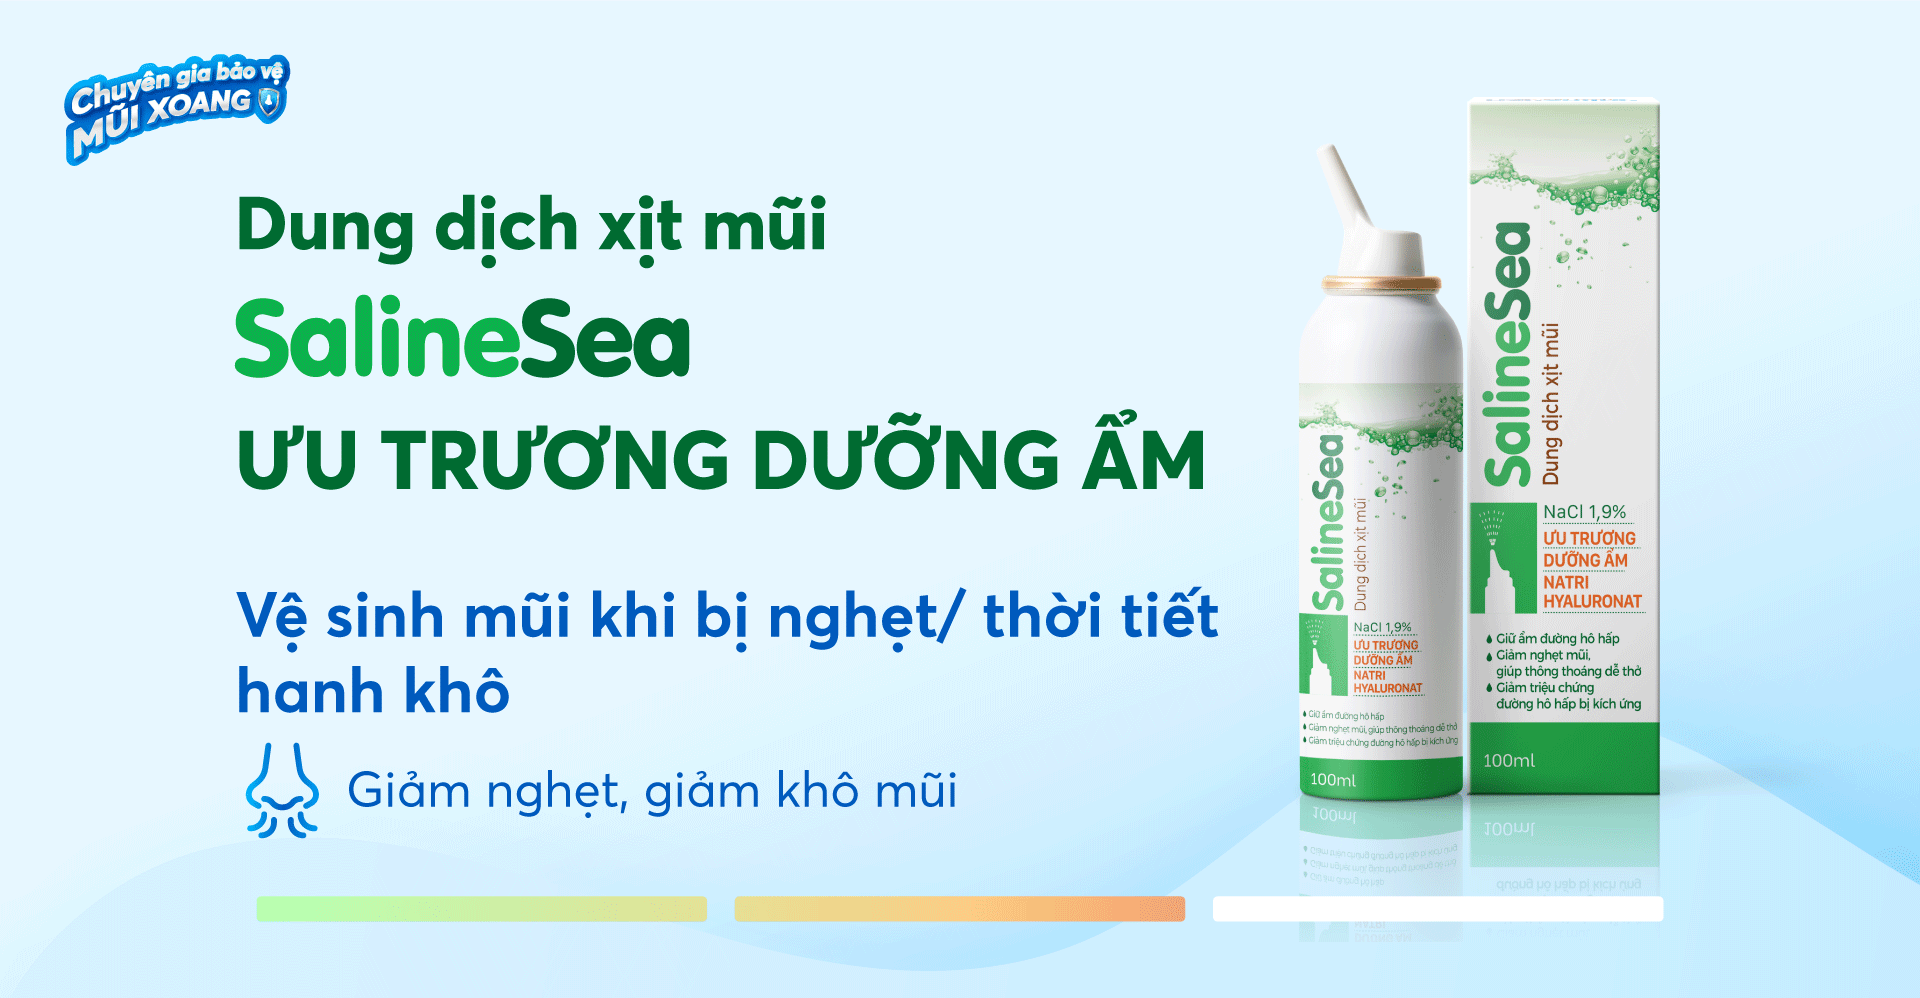 Dung dịch xịt mũi SalineSea ưu trương dưỡng ẩm dùng khi nghẹt mũi, khô mũi